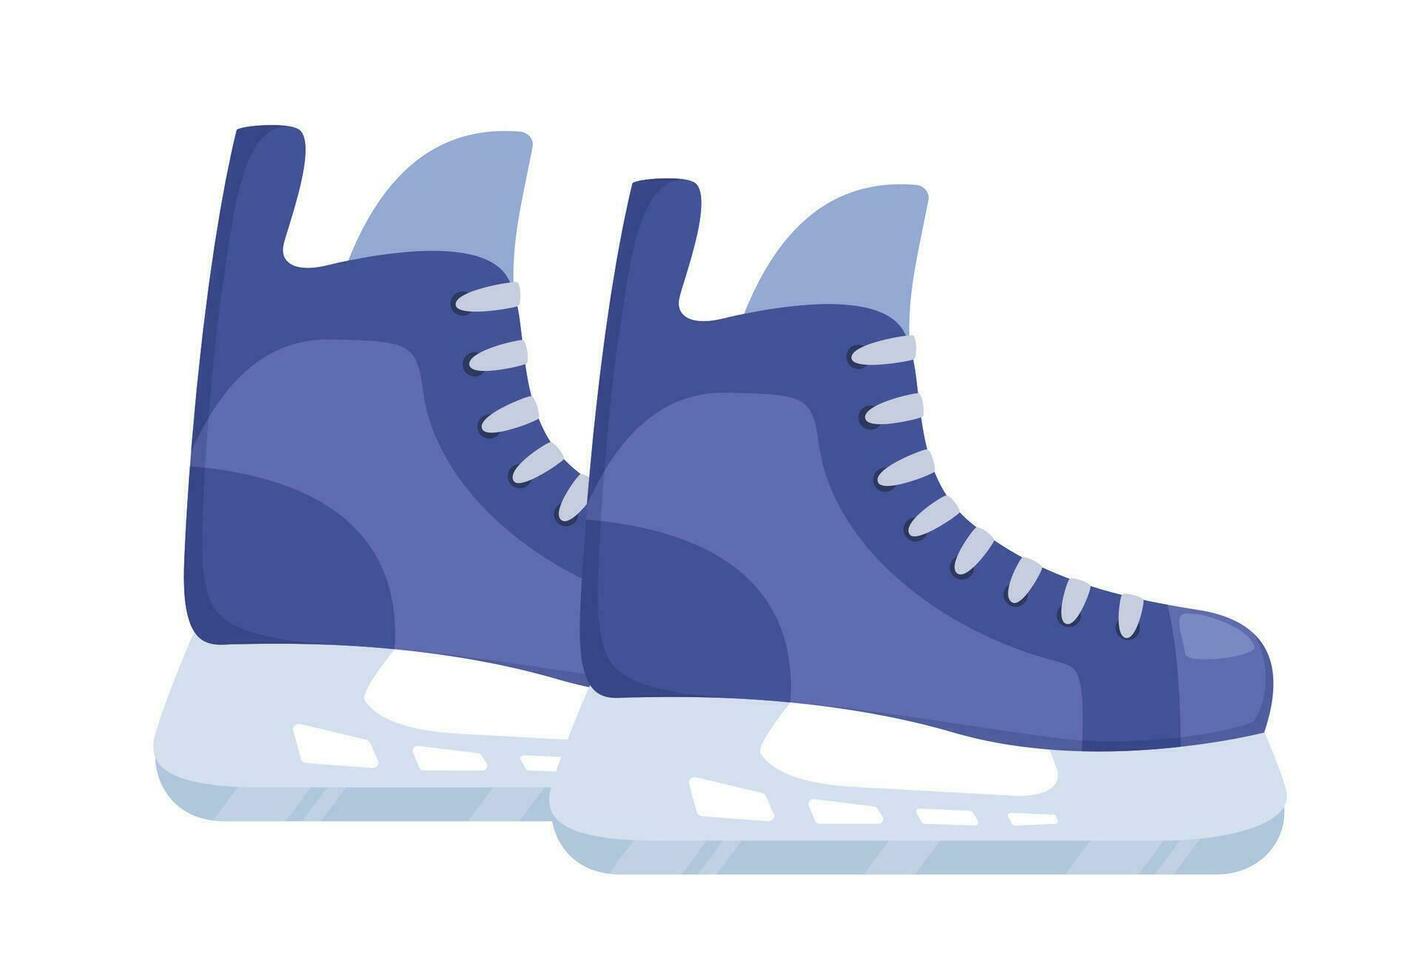 hielo patines para jugando hockey. hockey equipo. vector ilustración de de los hombres patines